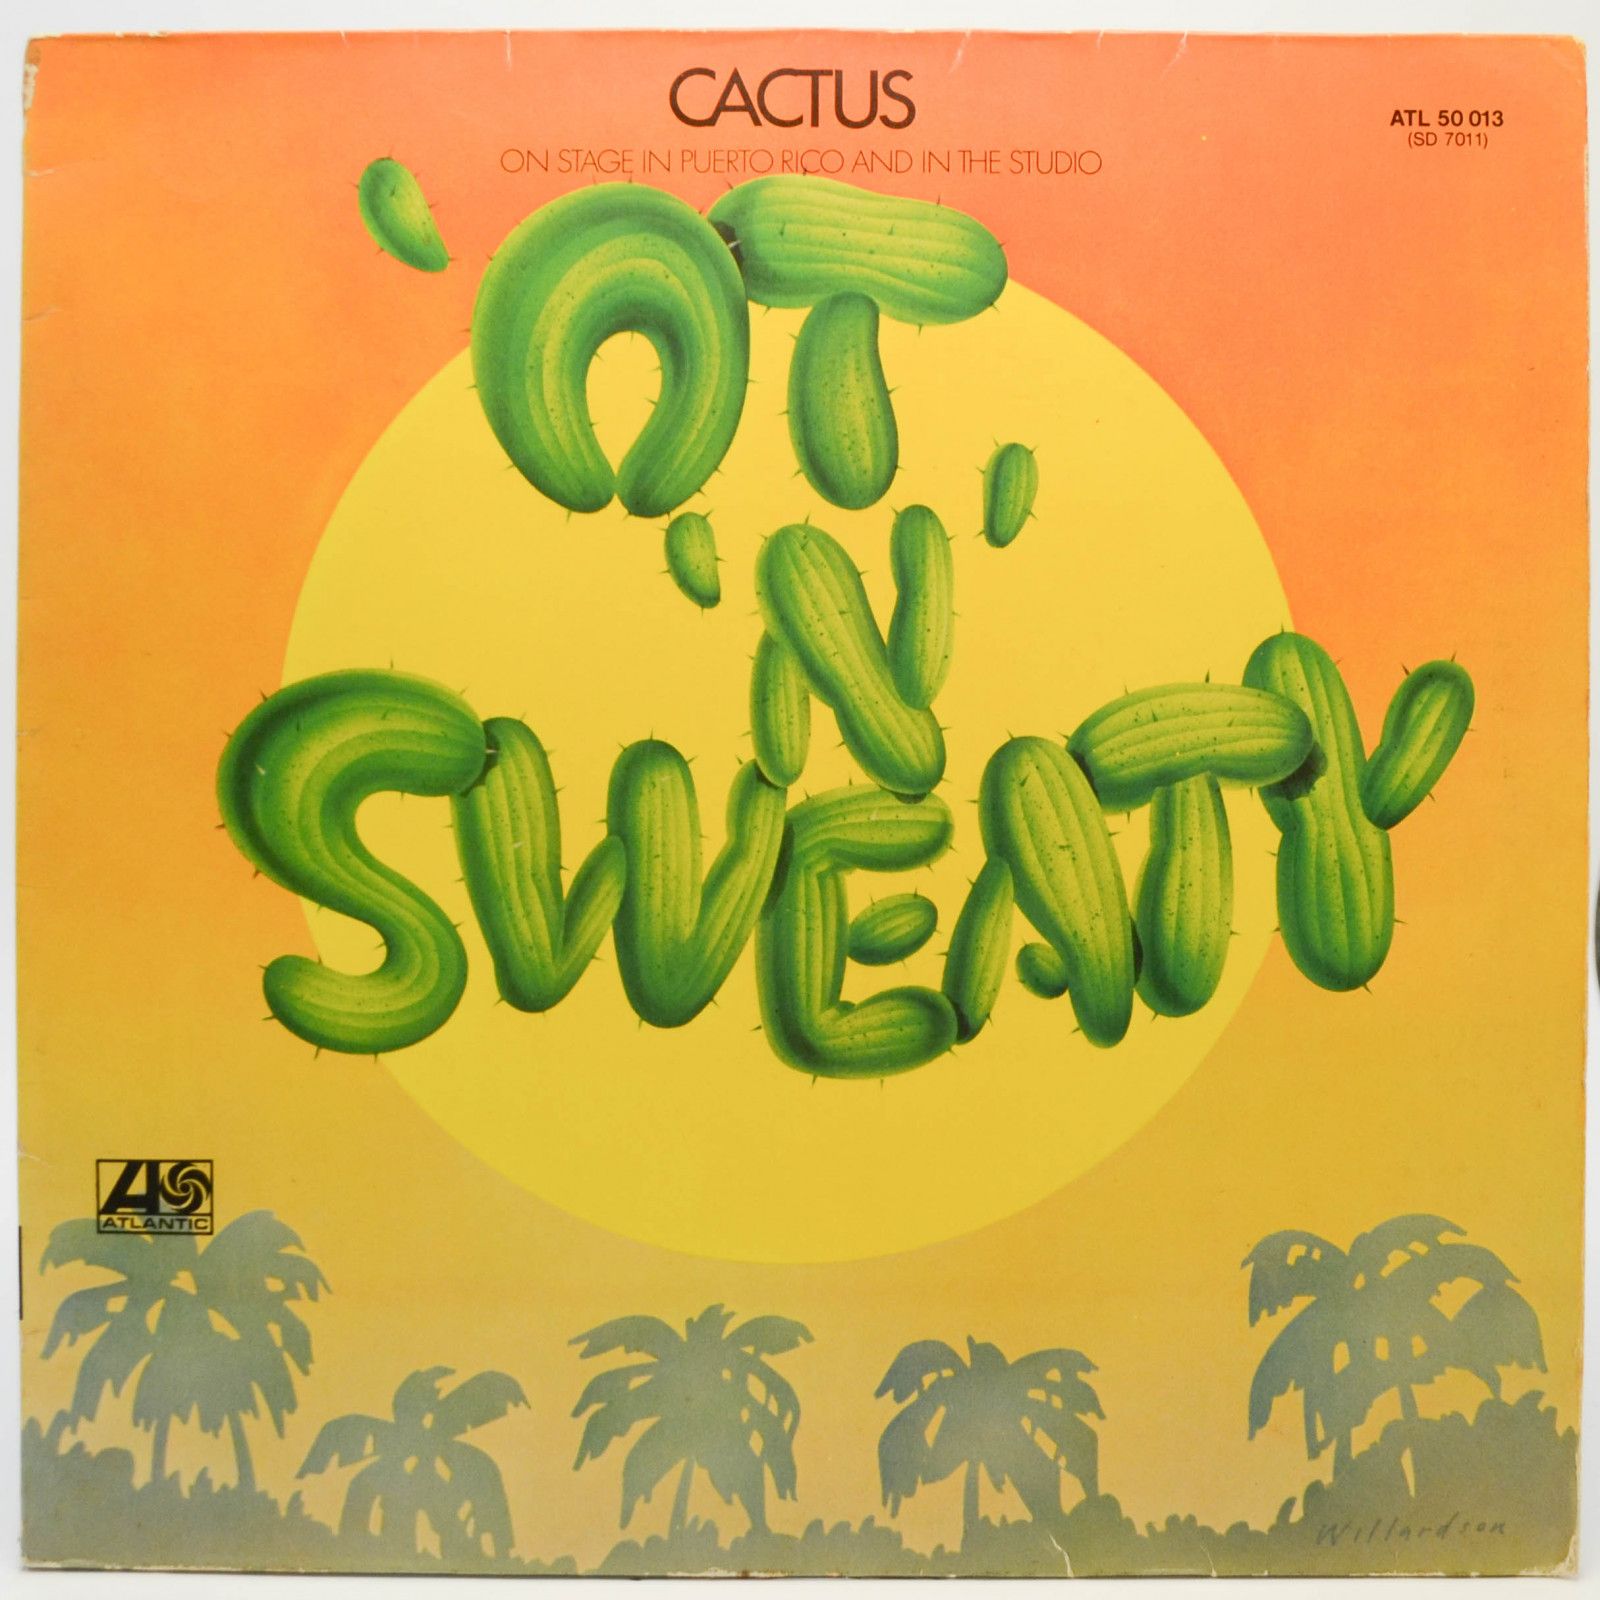 Cactus — 'Ot 'N' Sweaty, 1972